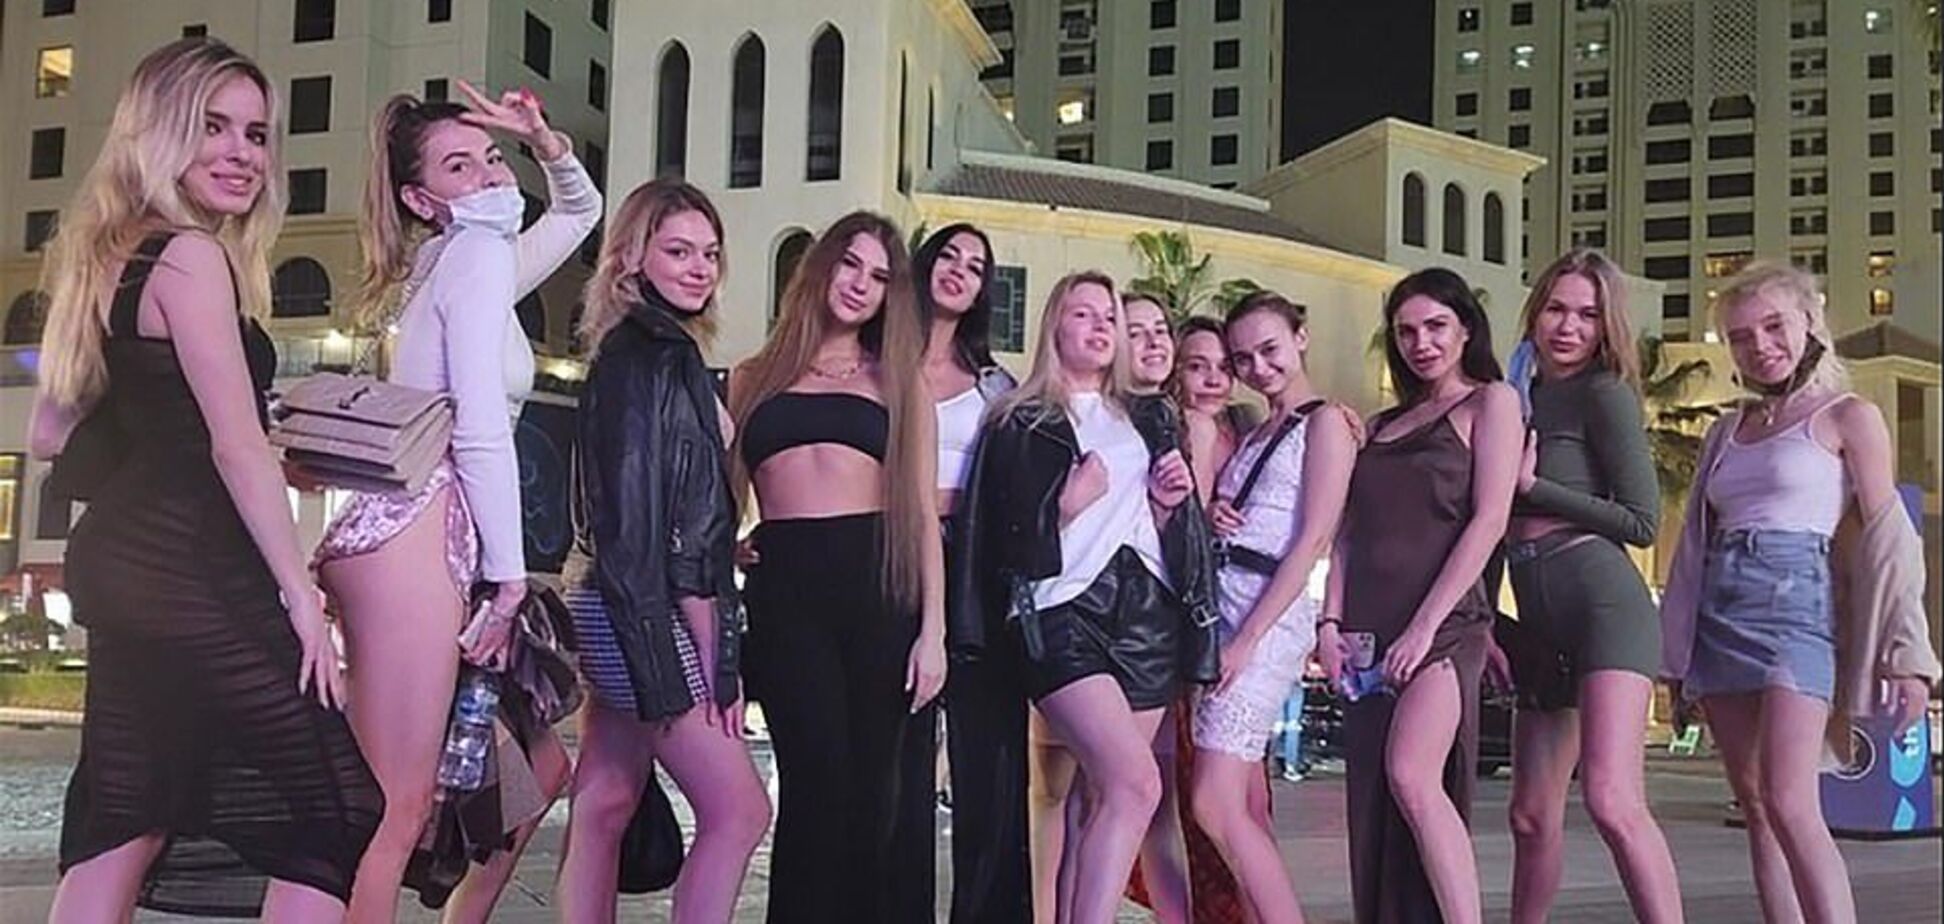 Новые фото и видео арестованных в Дубае девушек попали в сеть